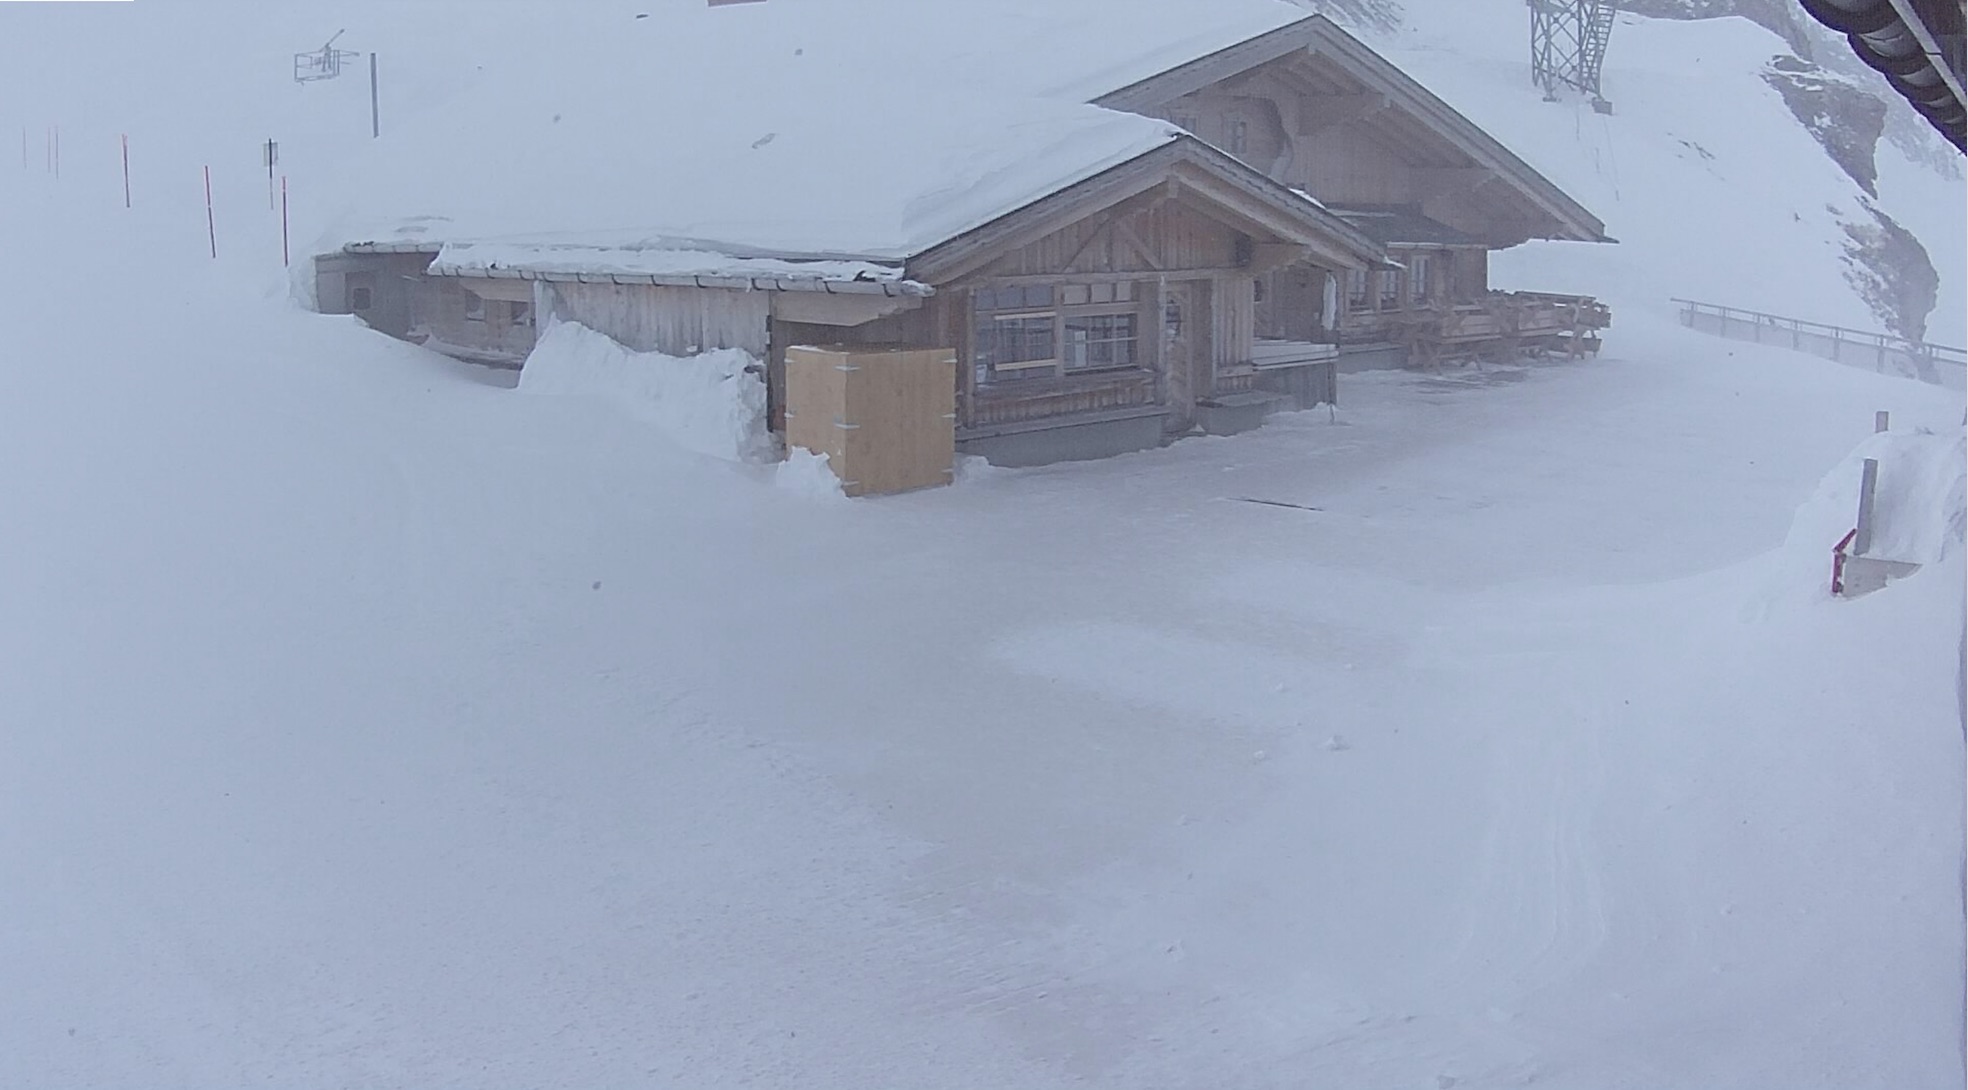 Webkamera, Engelberg, Svájc. Január 9-én 3028 méteres magasságban 511 cm vastag volt a hó. Ennyi hó tavaly egész télen nem hullott ezen a helyen.